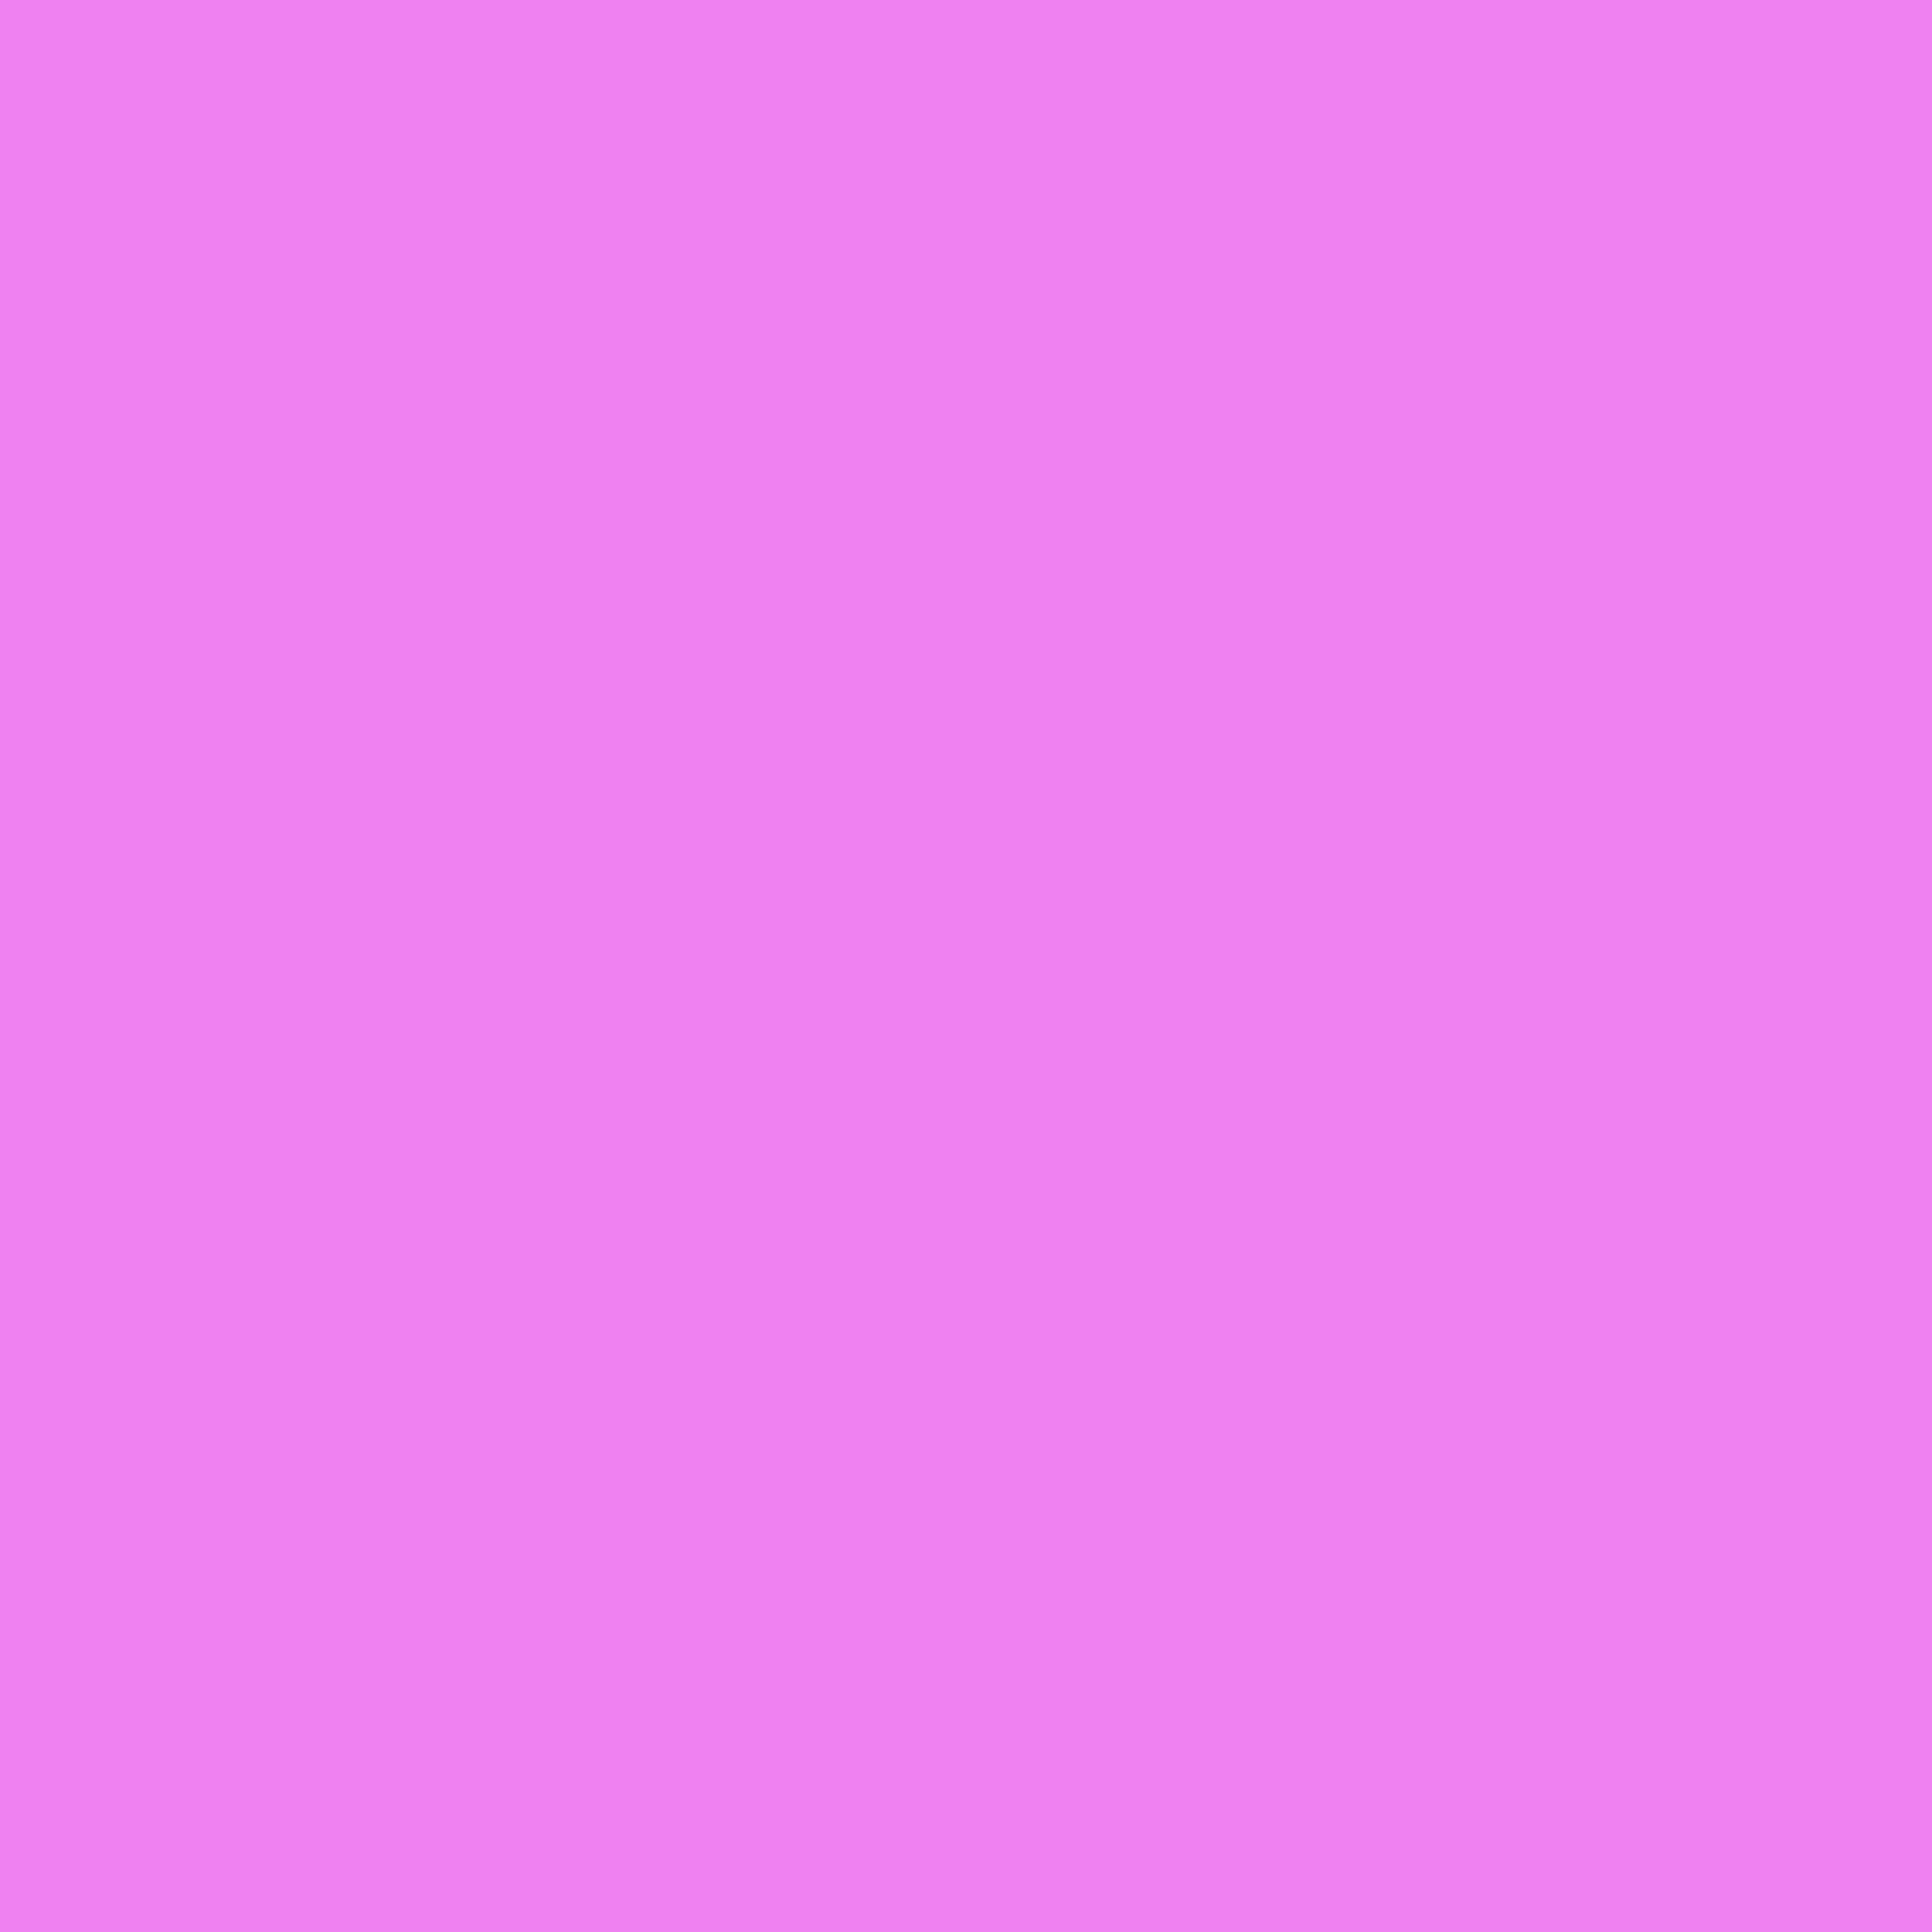 2732x2732 Lavender Magenta Solid Color Background